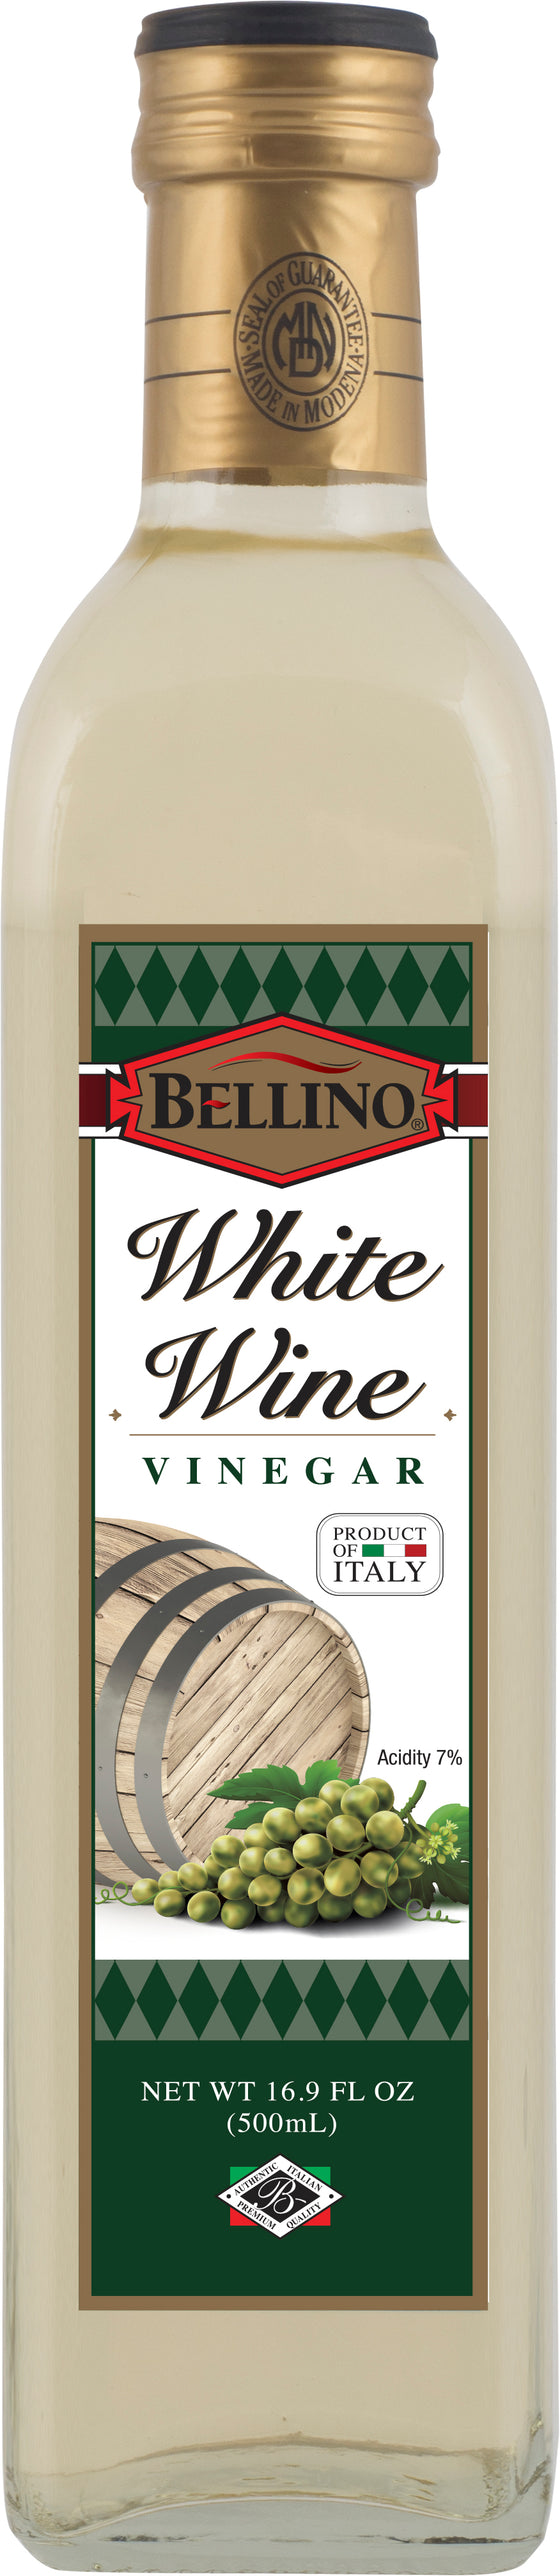 Bellino White Wine Vinegar 16.9 FL OZ